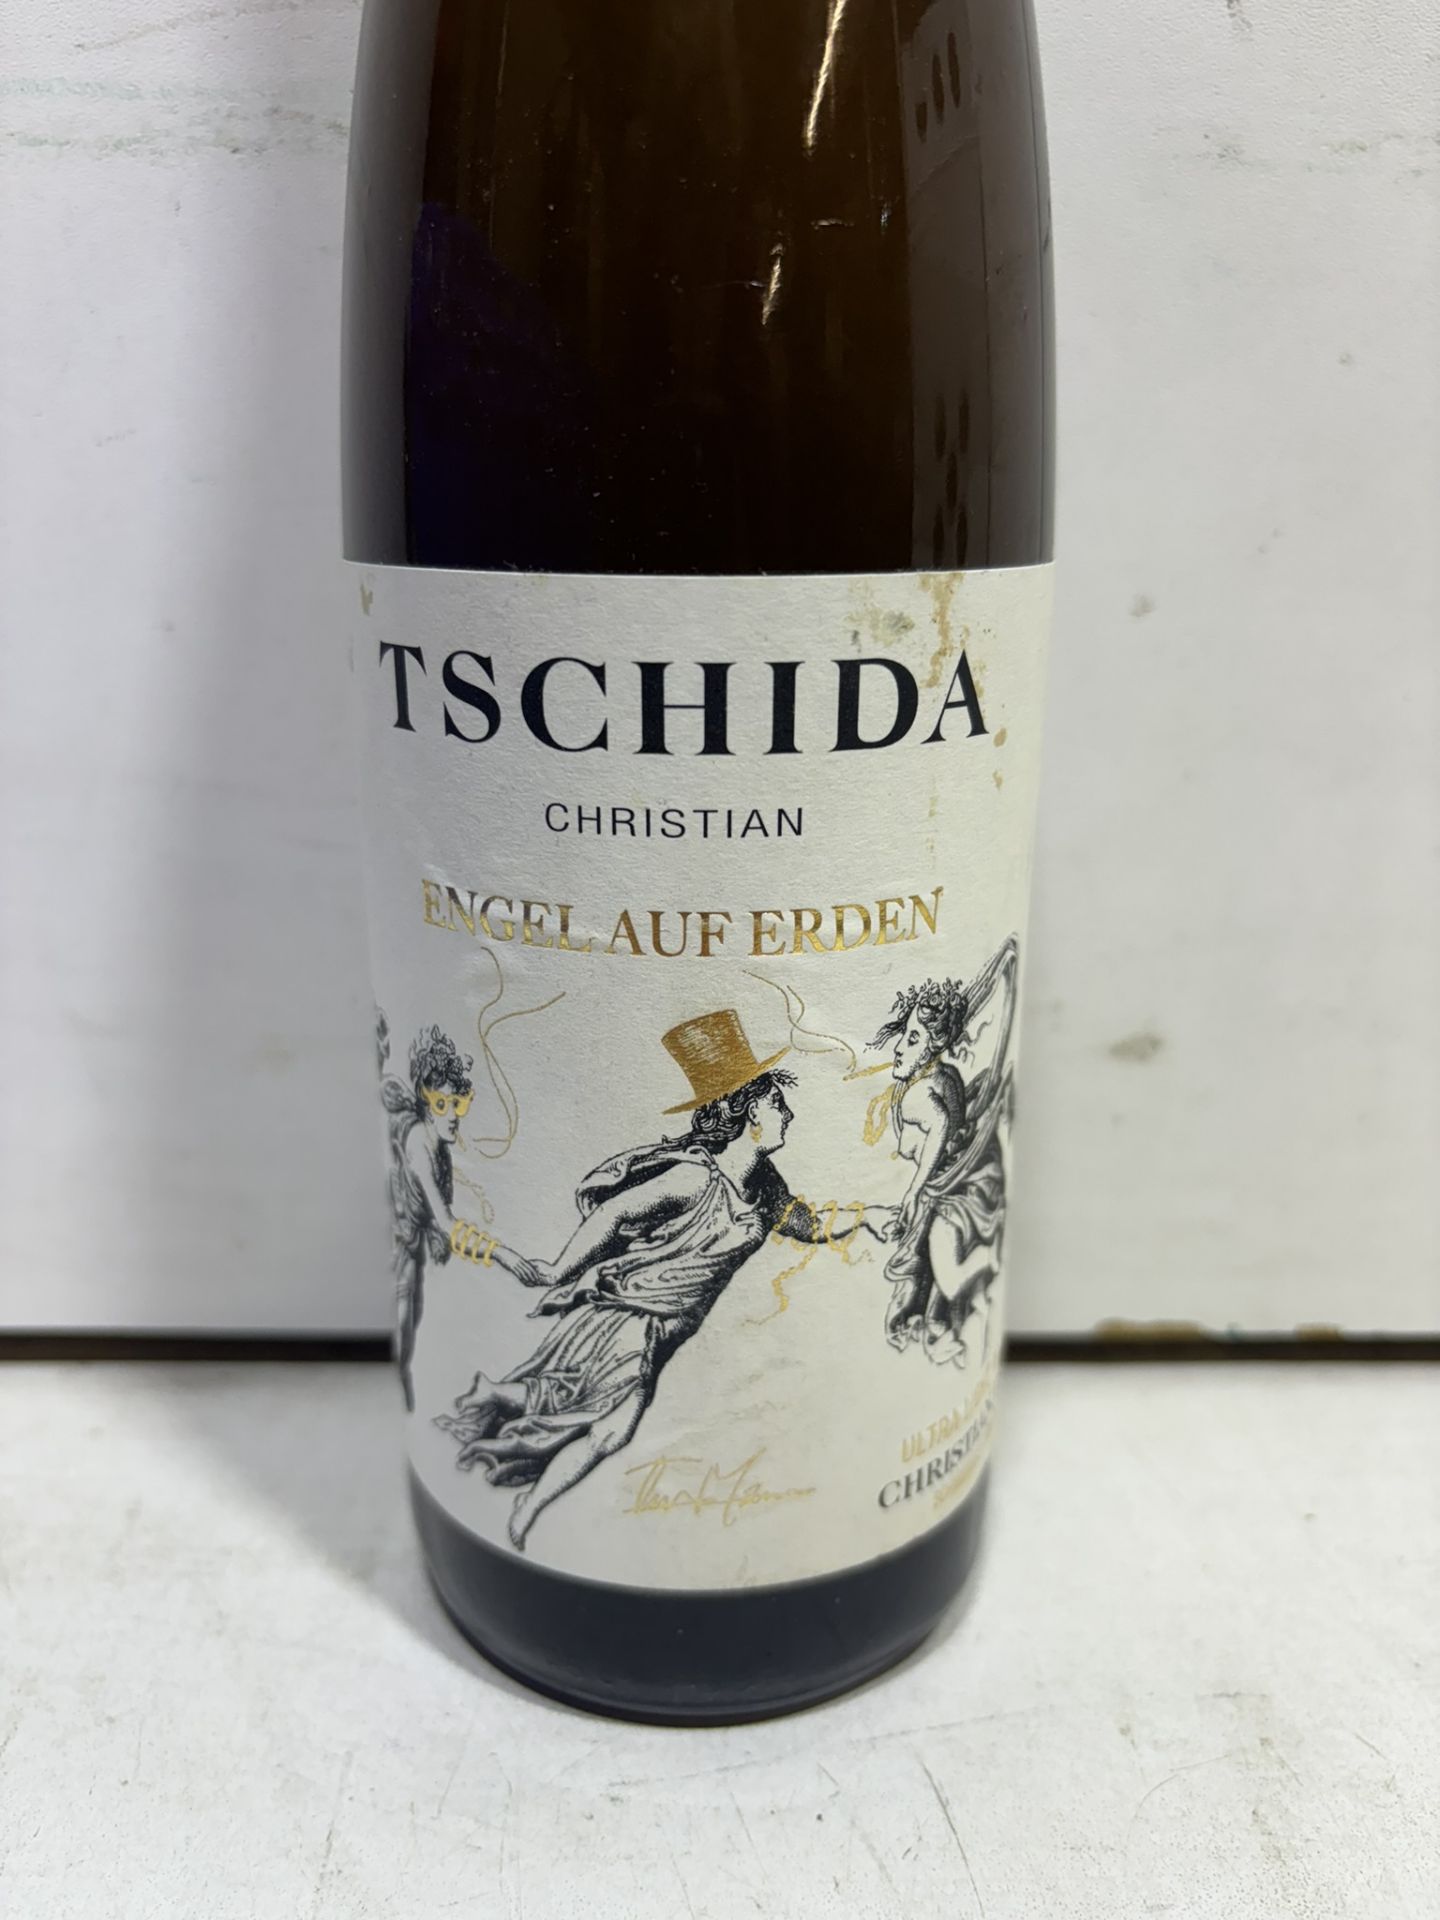 8 X Bottles Of Engel Auf Erden, Christian Tschida 2020 White Wine 75Cl - Image 2 of 4